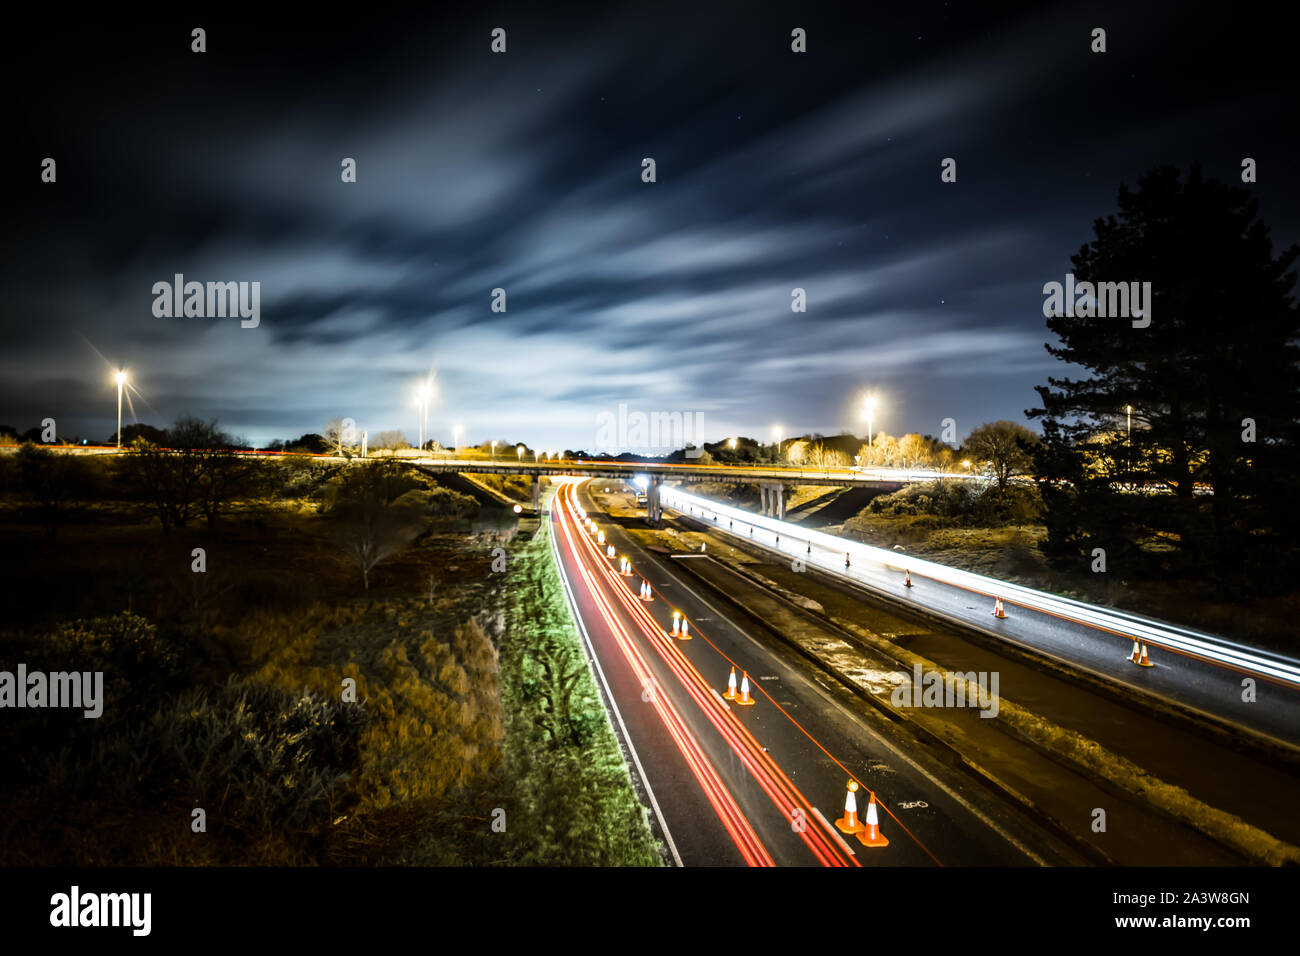 Lavori in corso su una strada a doppia carreggiata di notte che mostra i percorsi di luce di vetture passando da Foto Stock